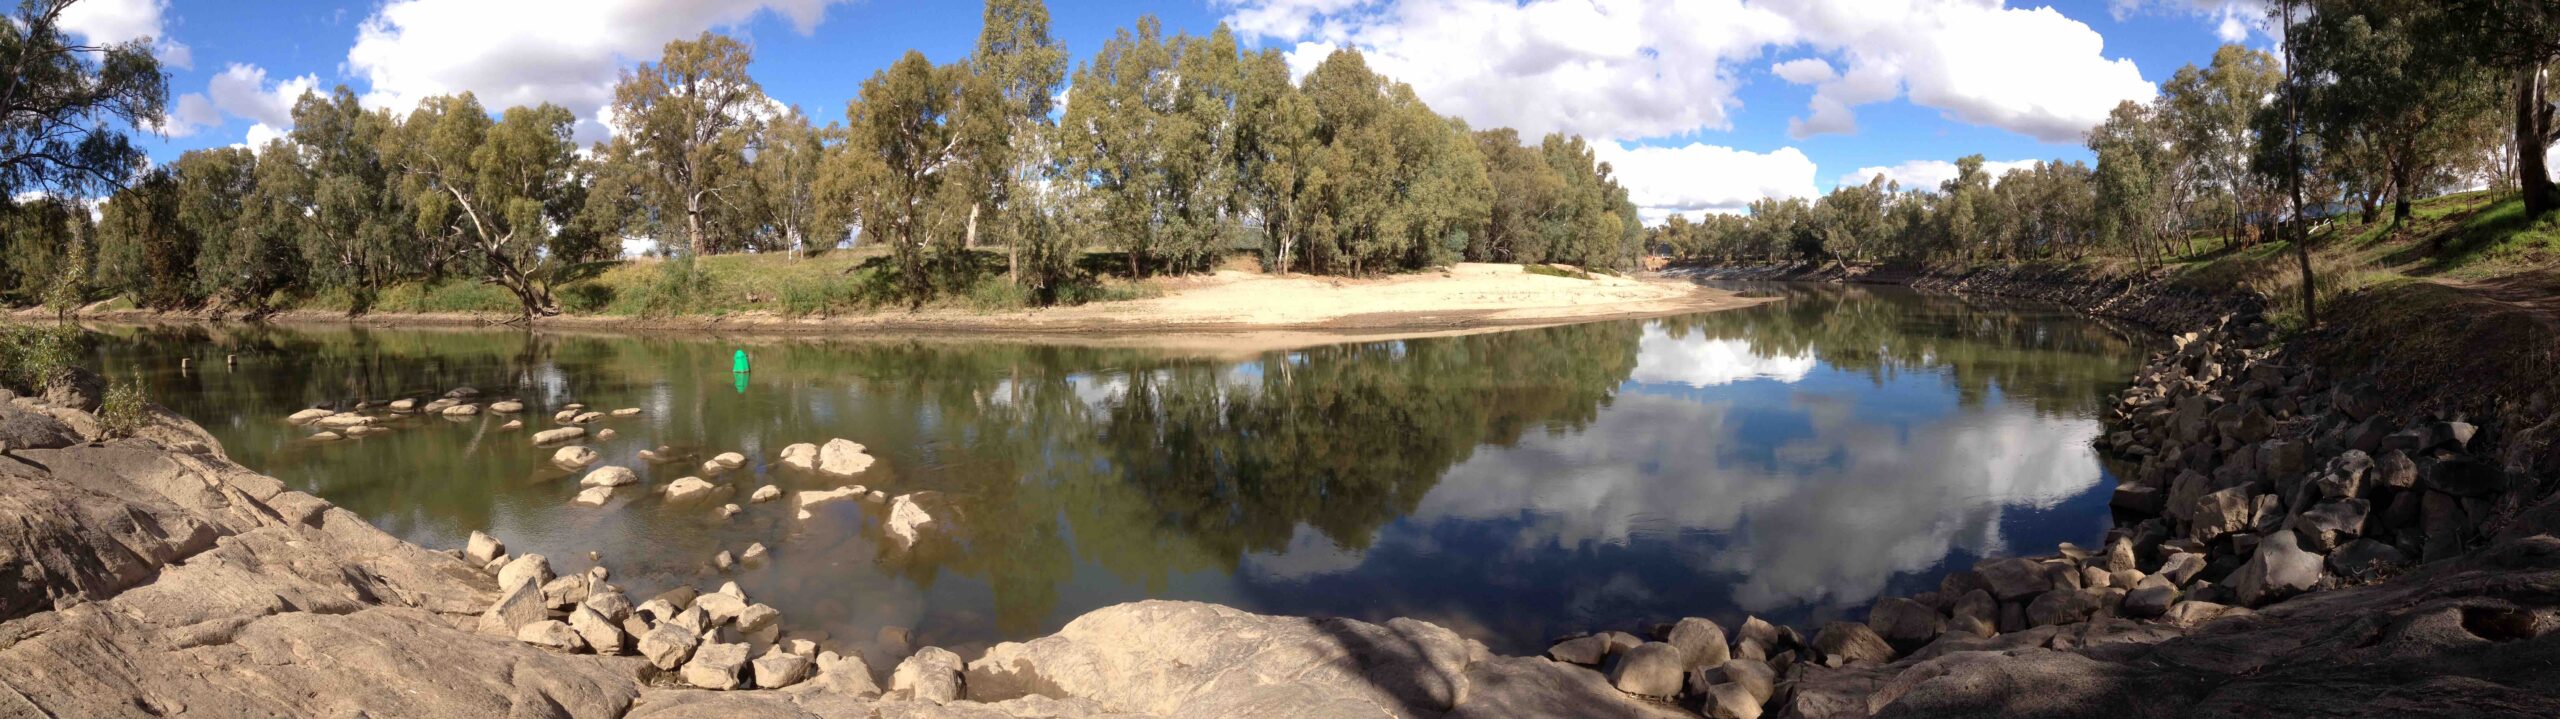 Panorama of the Murrumbidgee River, Wagga Wagga